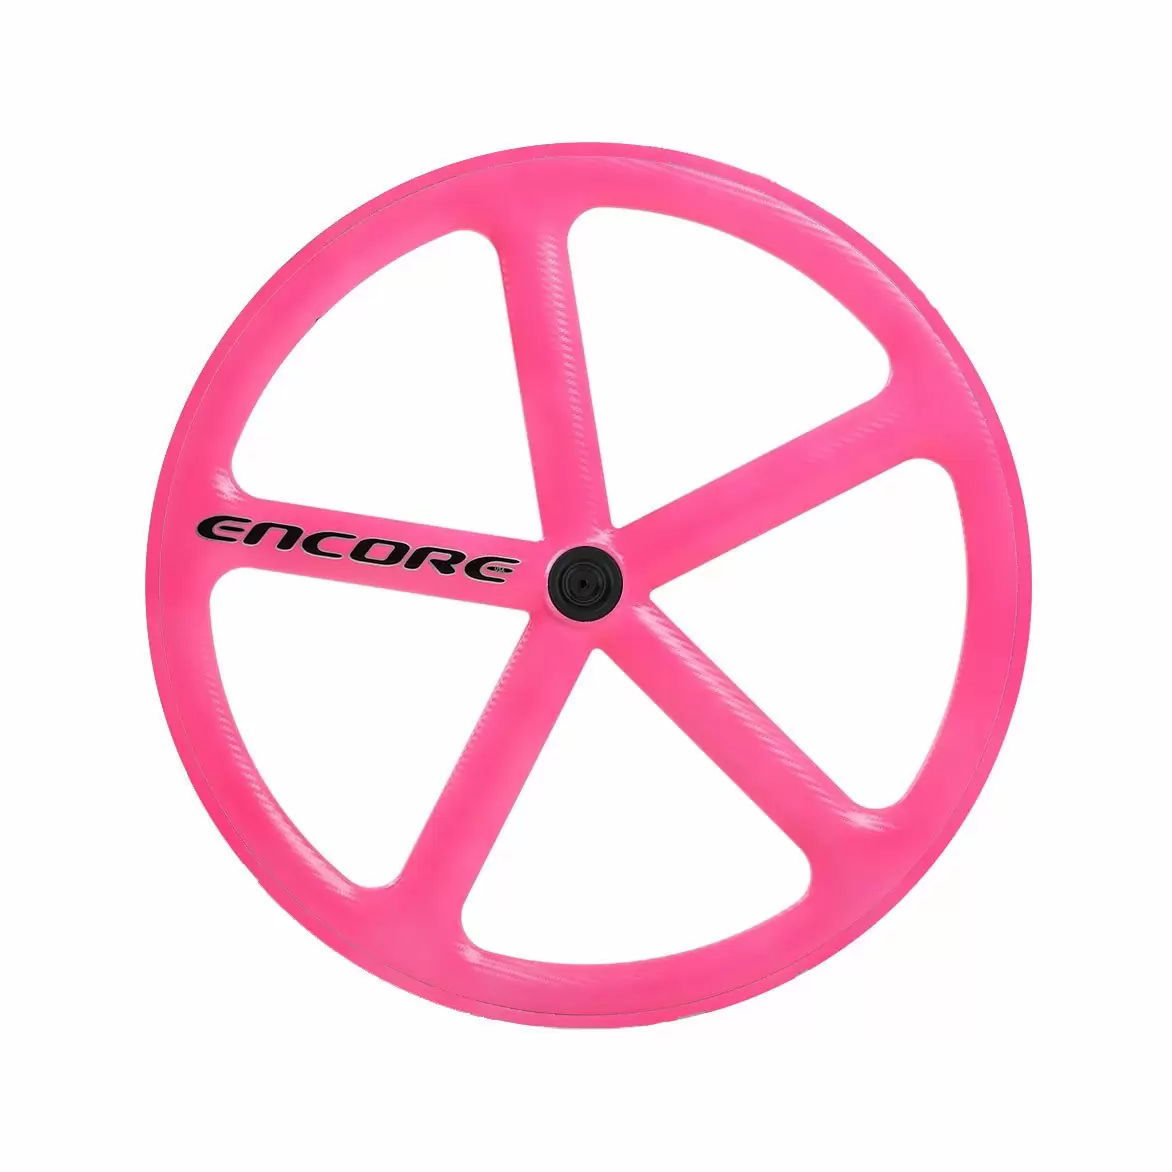 roda traseira 700c track 5 raios fibra de carbono rosa neon nmsw - image